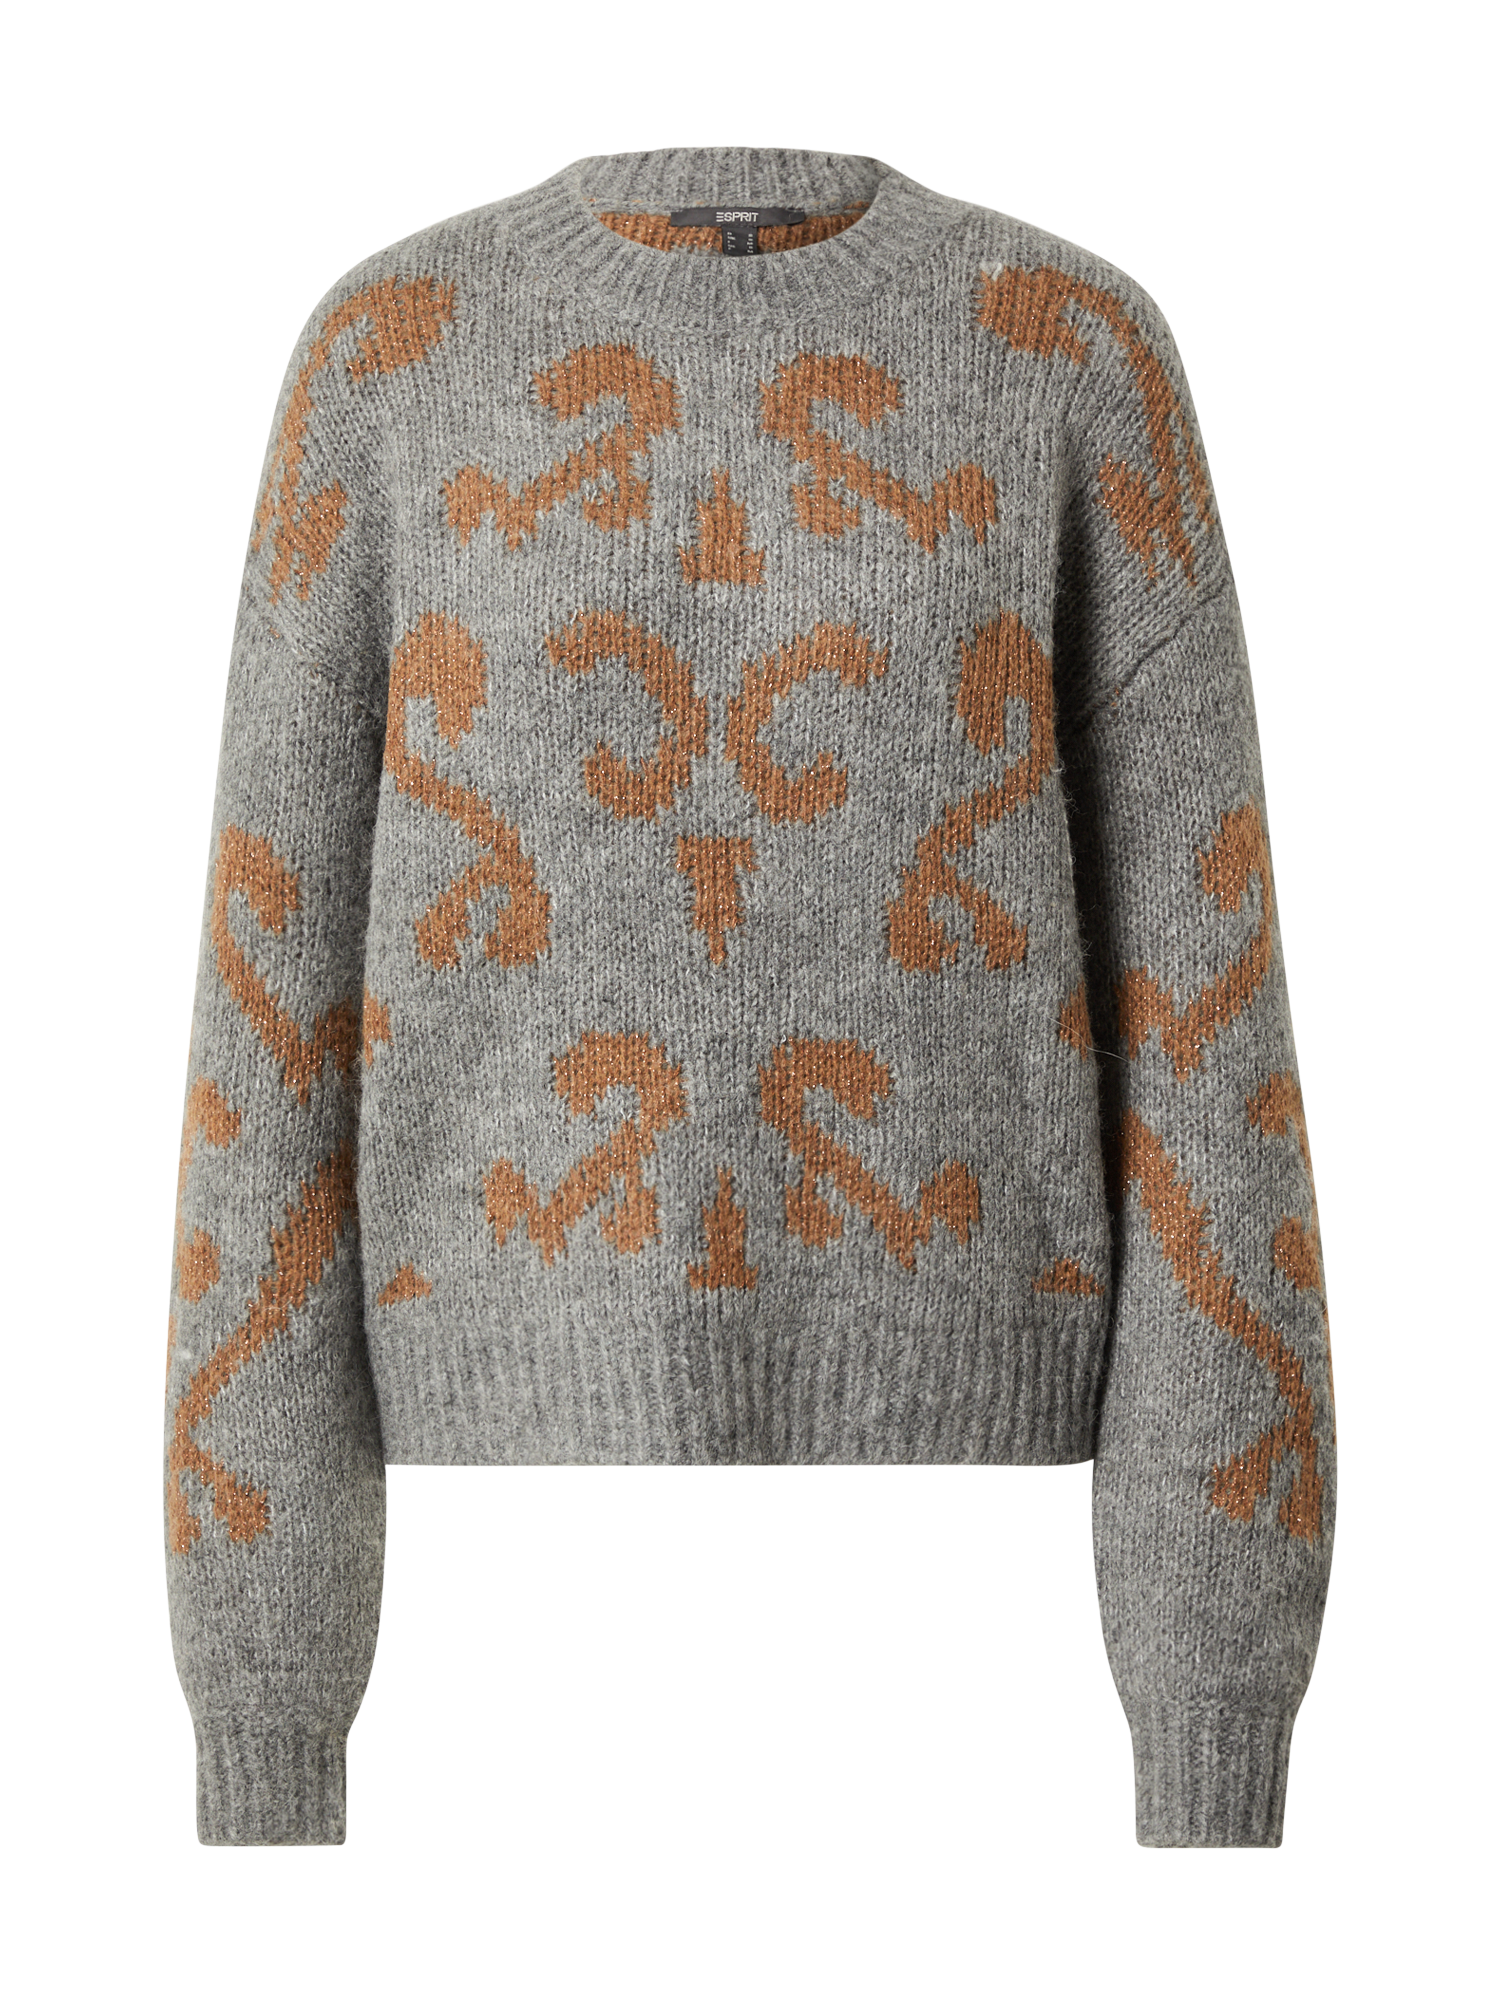 Swetry & dzianina Kobiety Esprit Collection Sweter w kolorze Grafitowym 